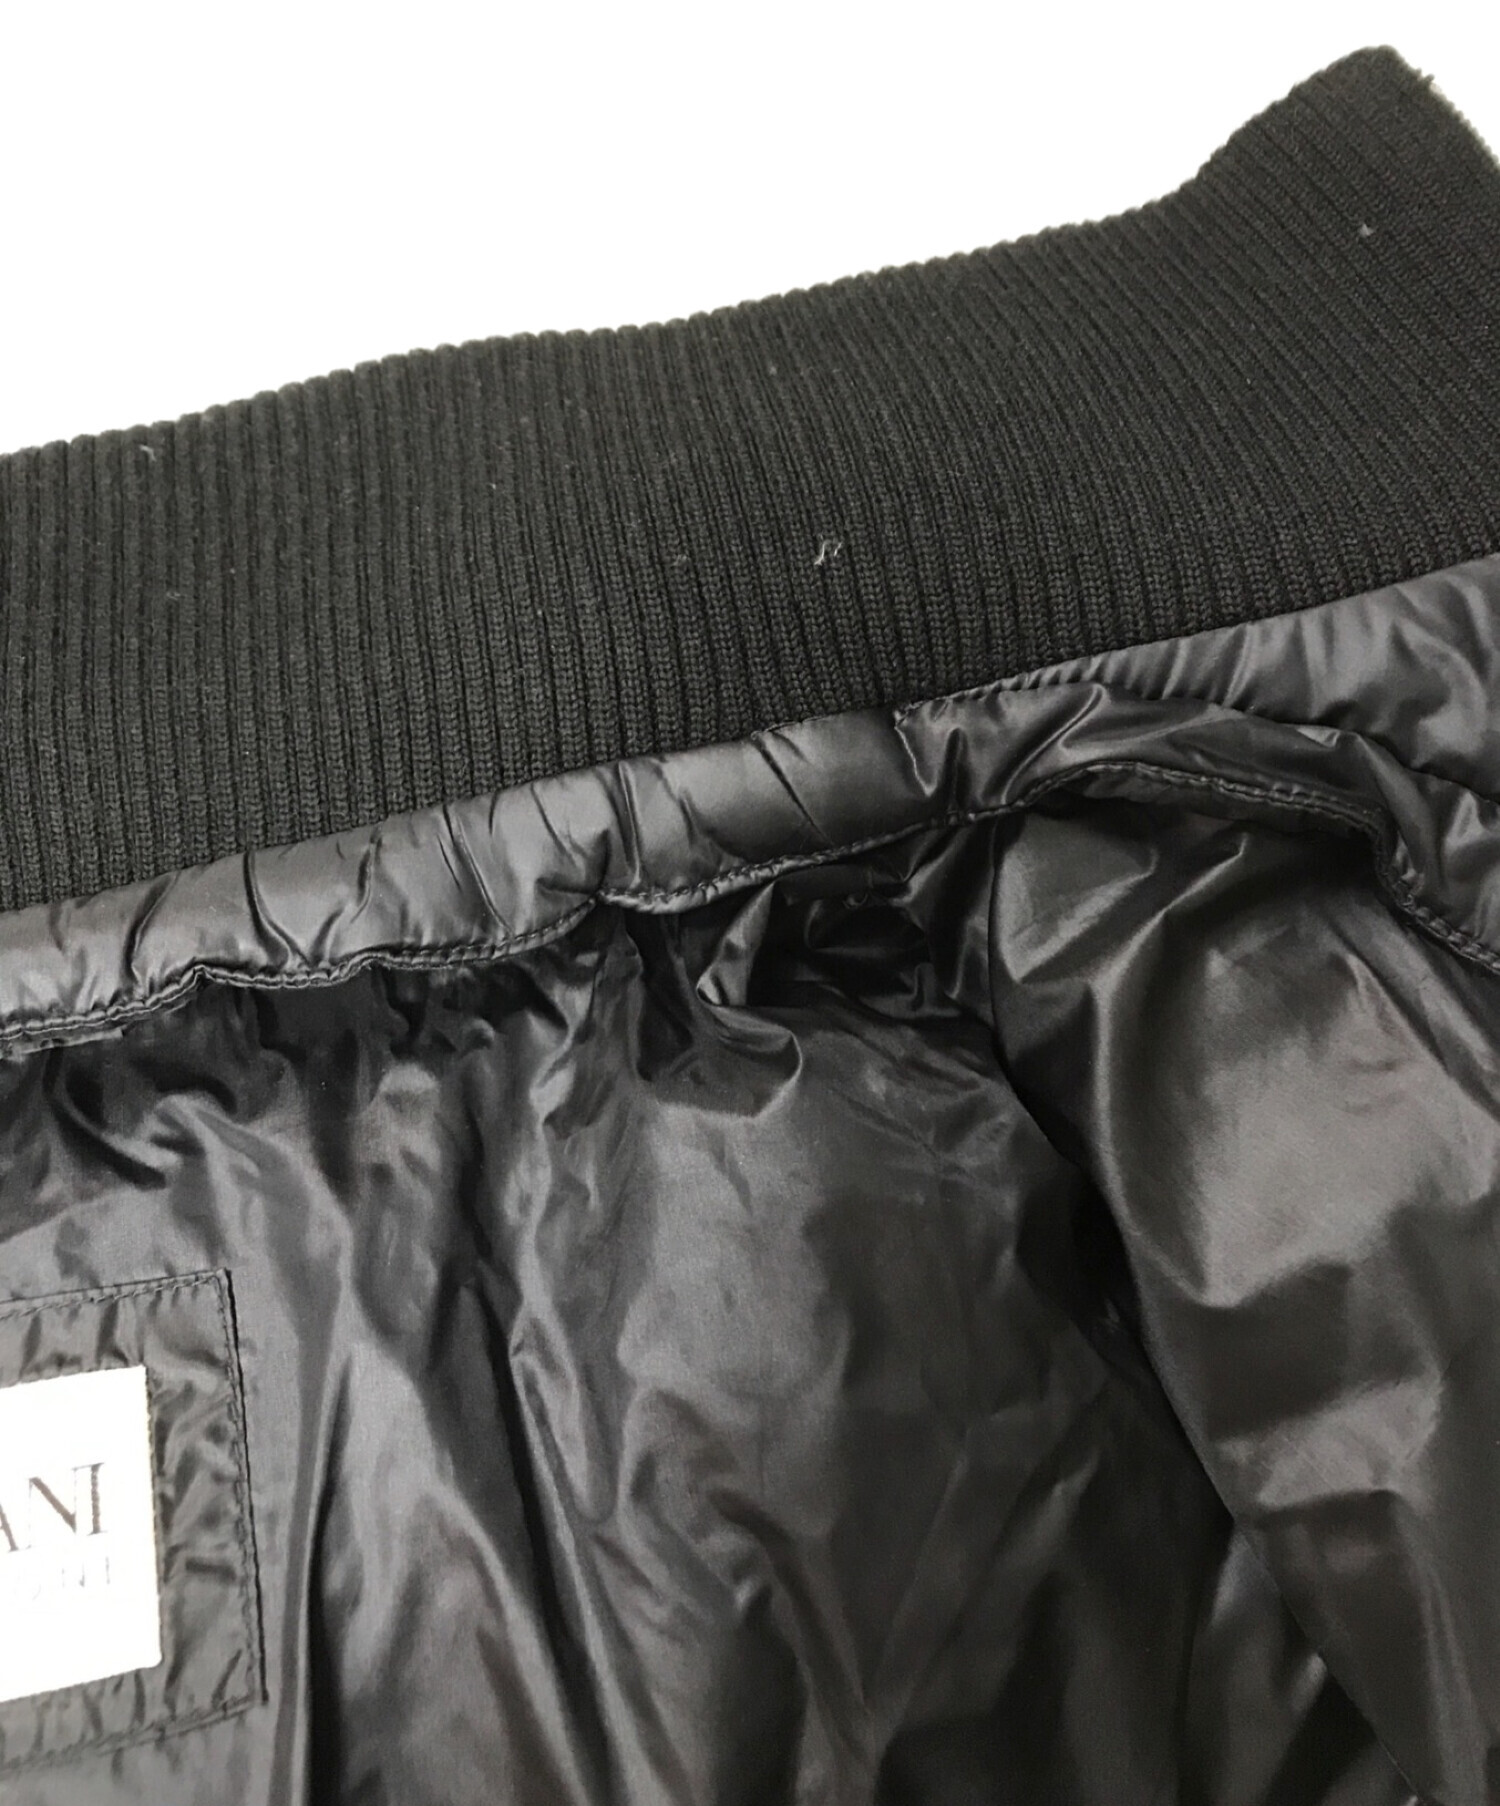 ARMANI COLLEZIONI (アルマーニコレツィオーニ) ダウンジャケット ブラック サイズ:50